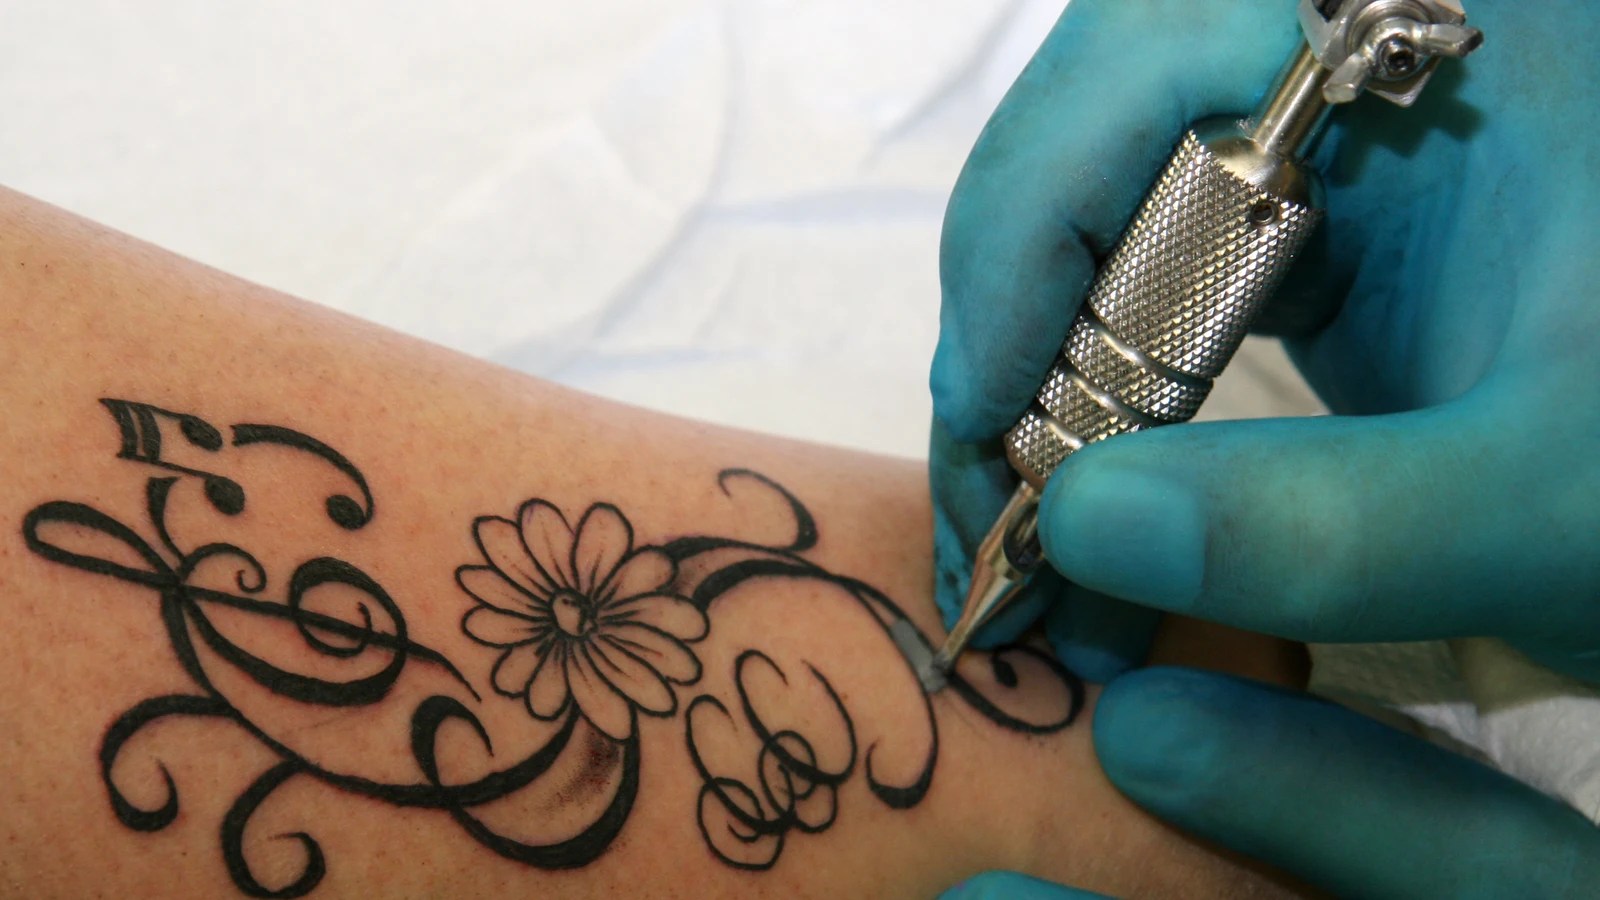 Los tatuajes aumentan el riesgo de desarrollar linfoma, según un estudio